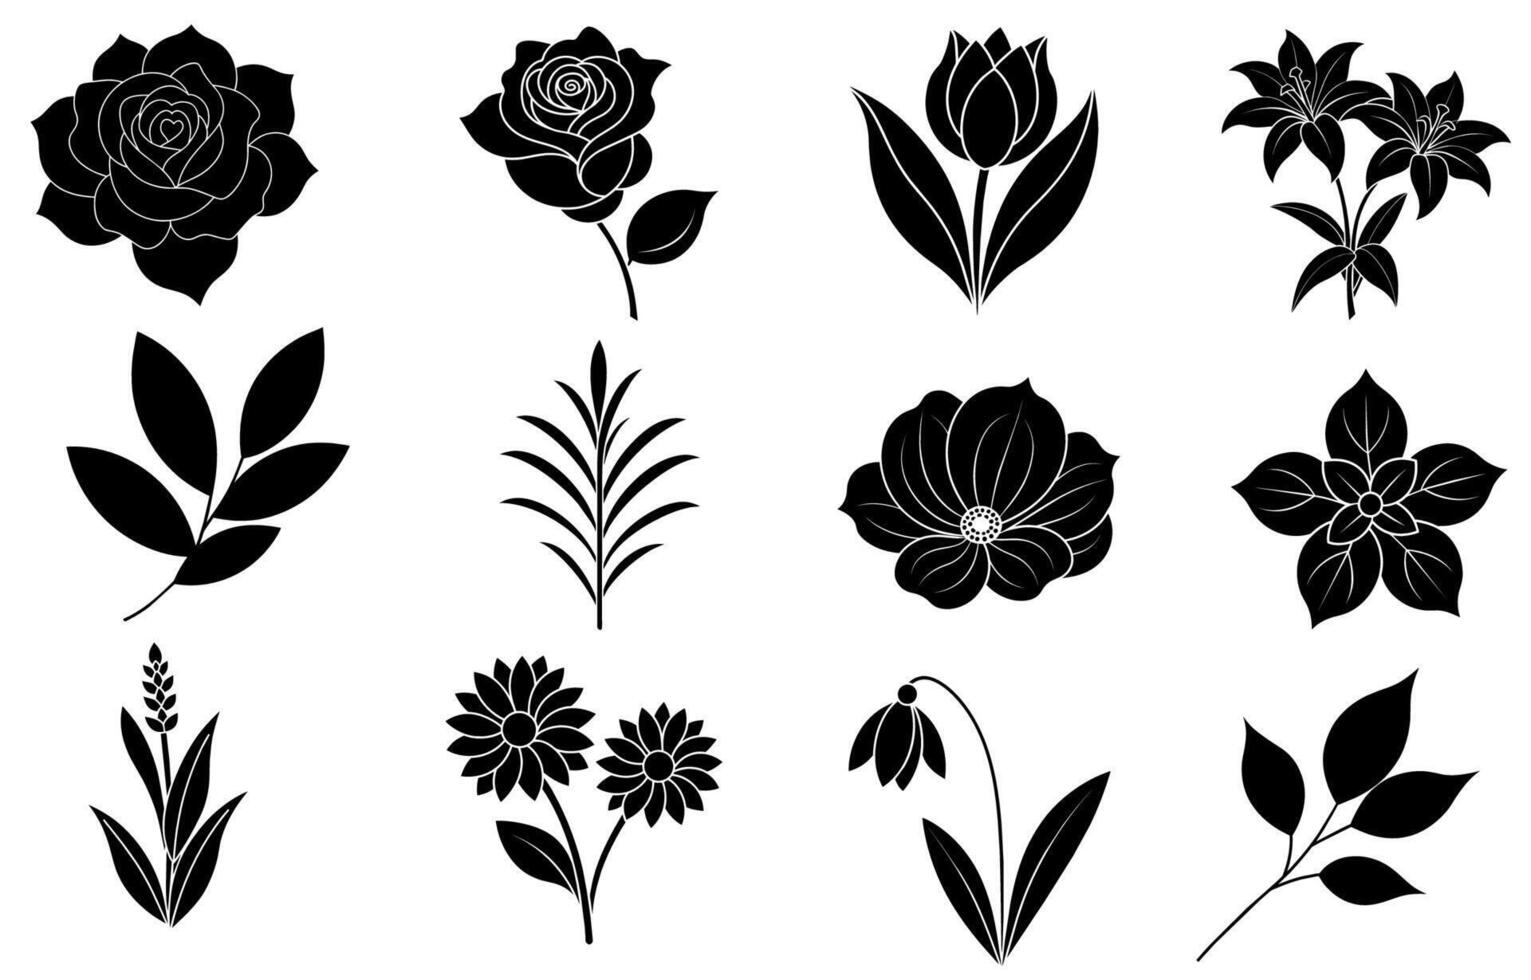 Sammlung von Silhouette Blume und Blatt Elemente vektor